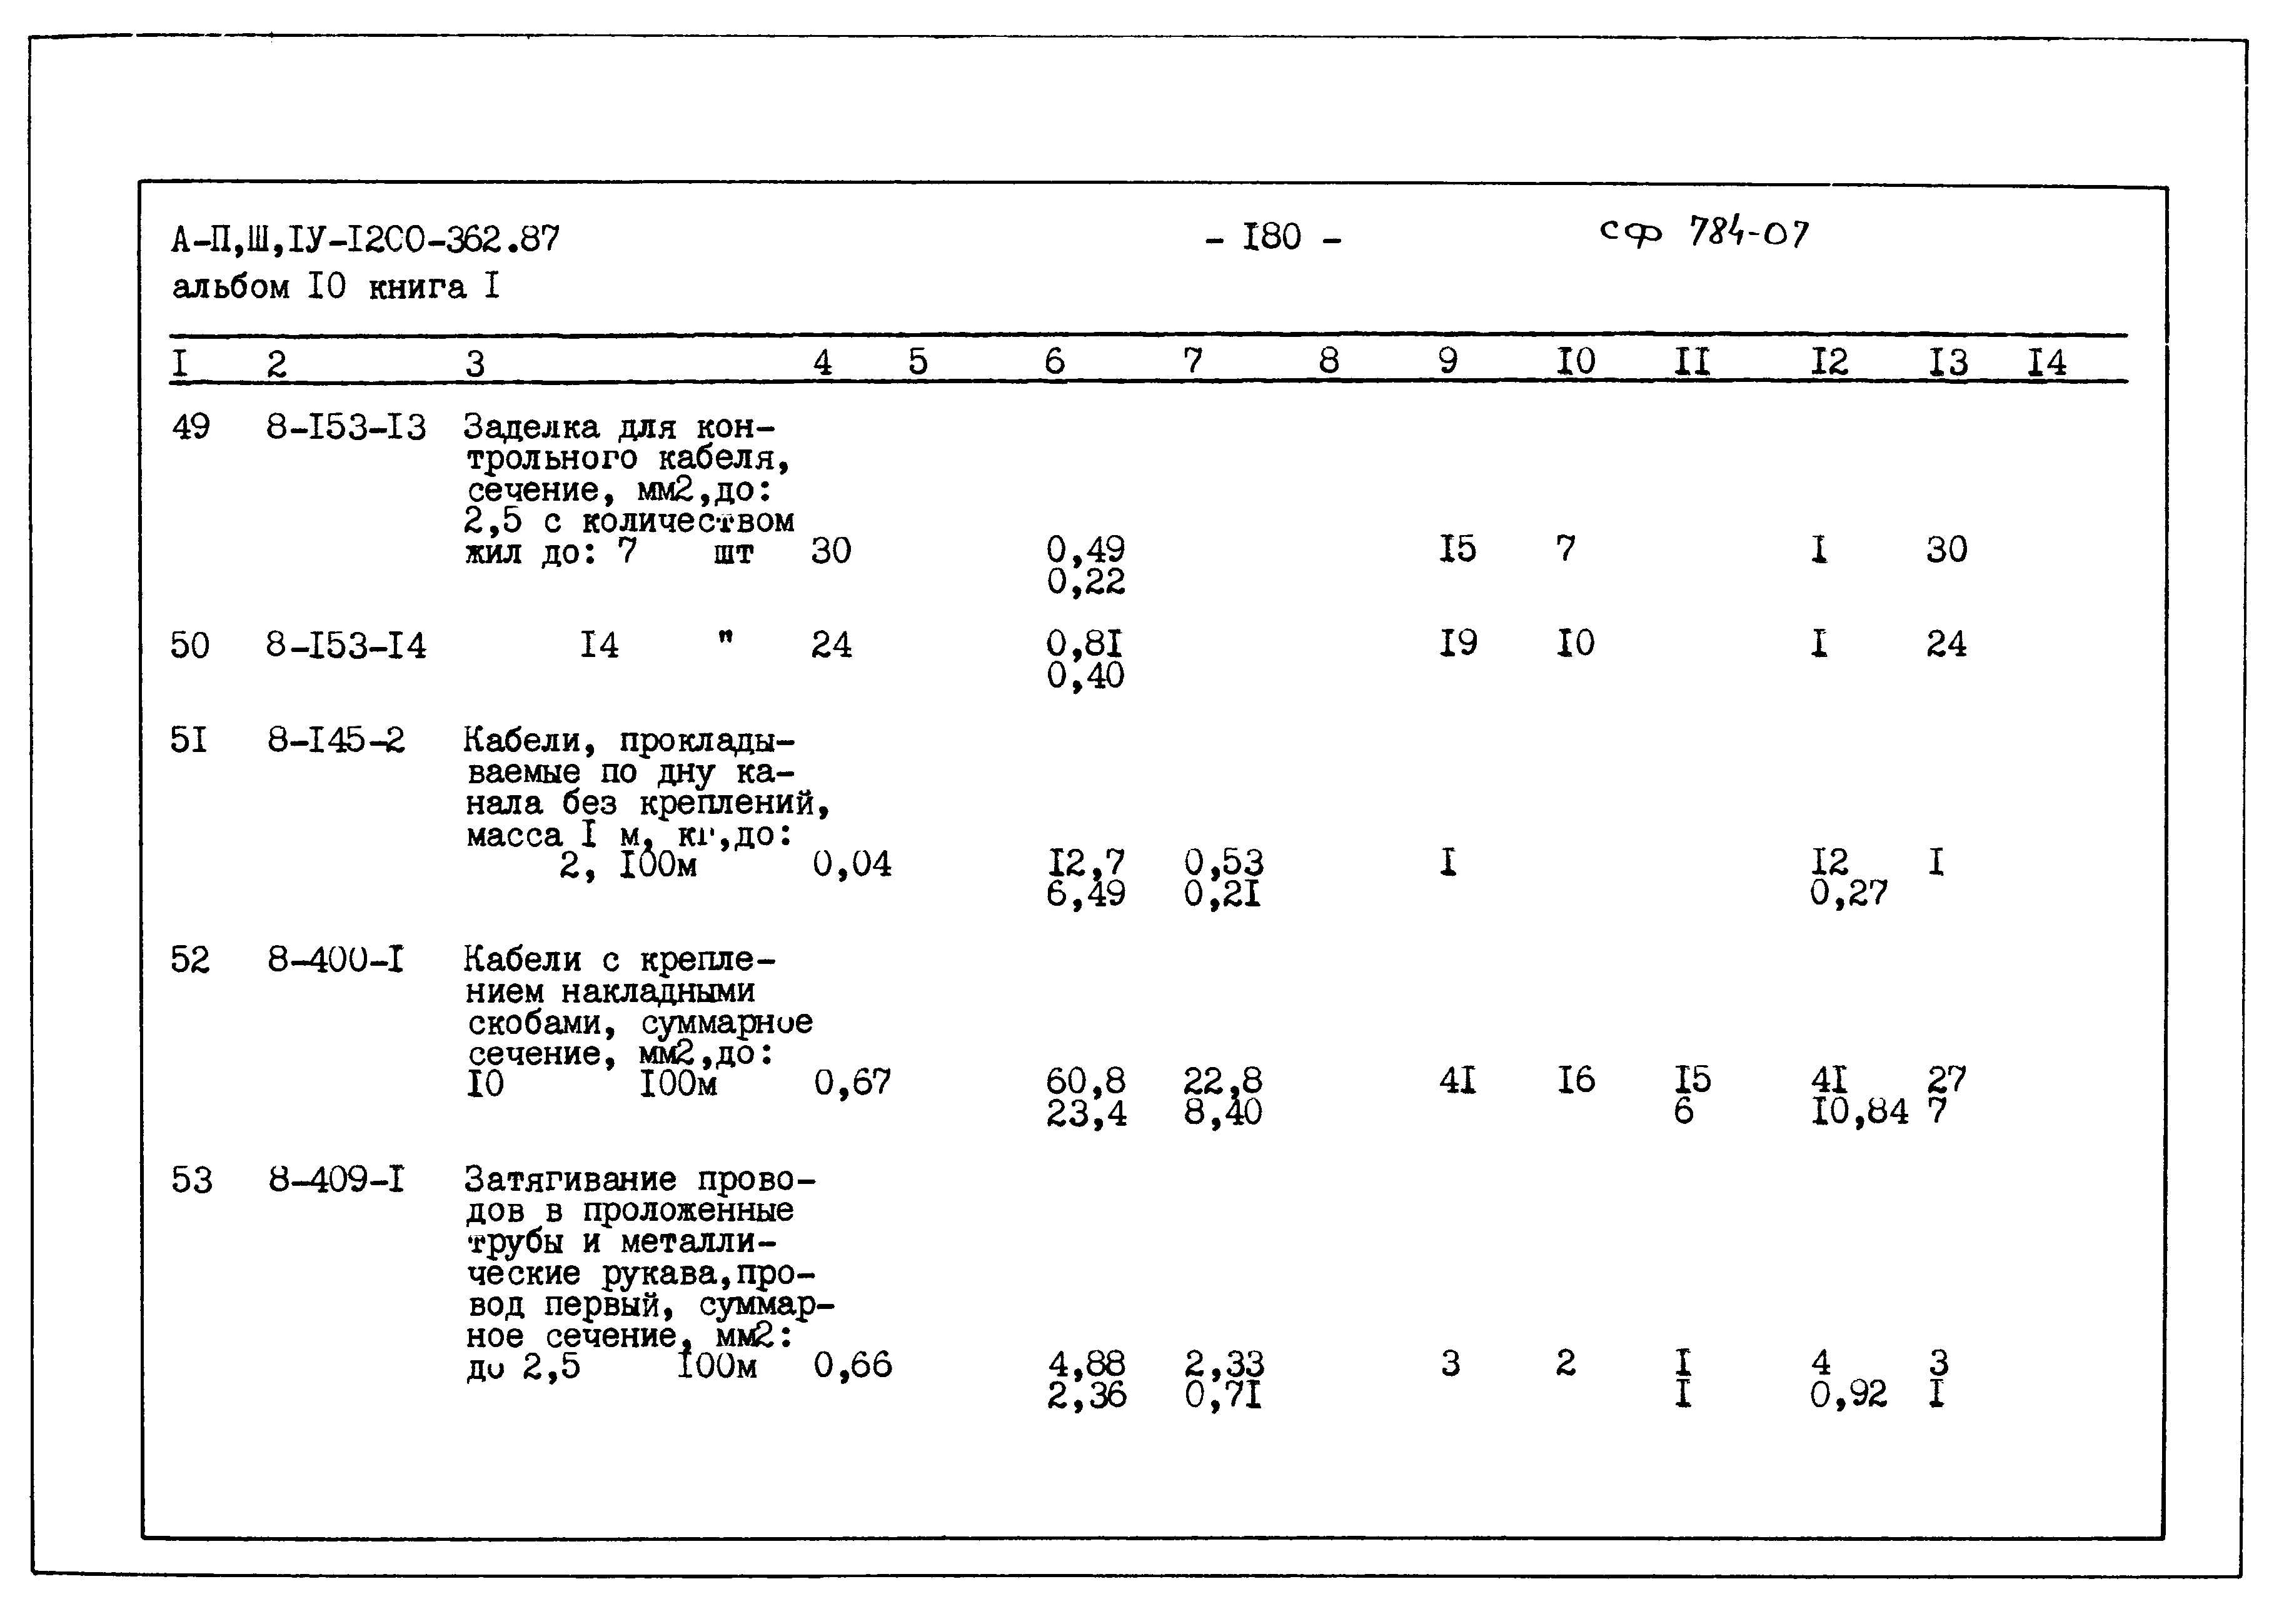 Типовой проект А-II,III,IV-1200-362.87